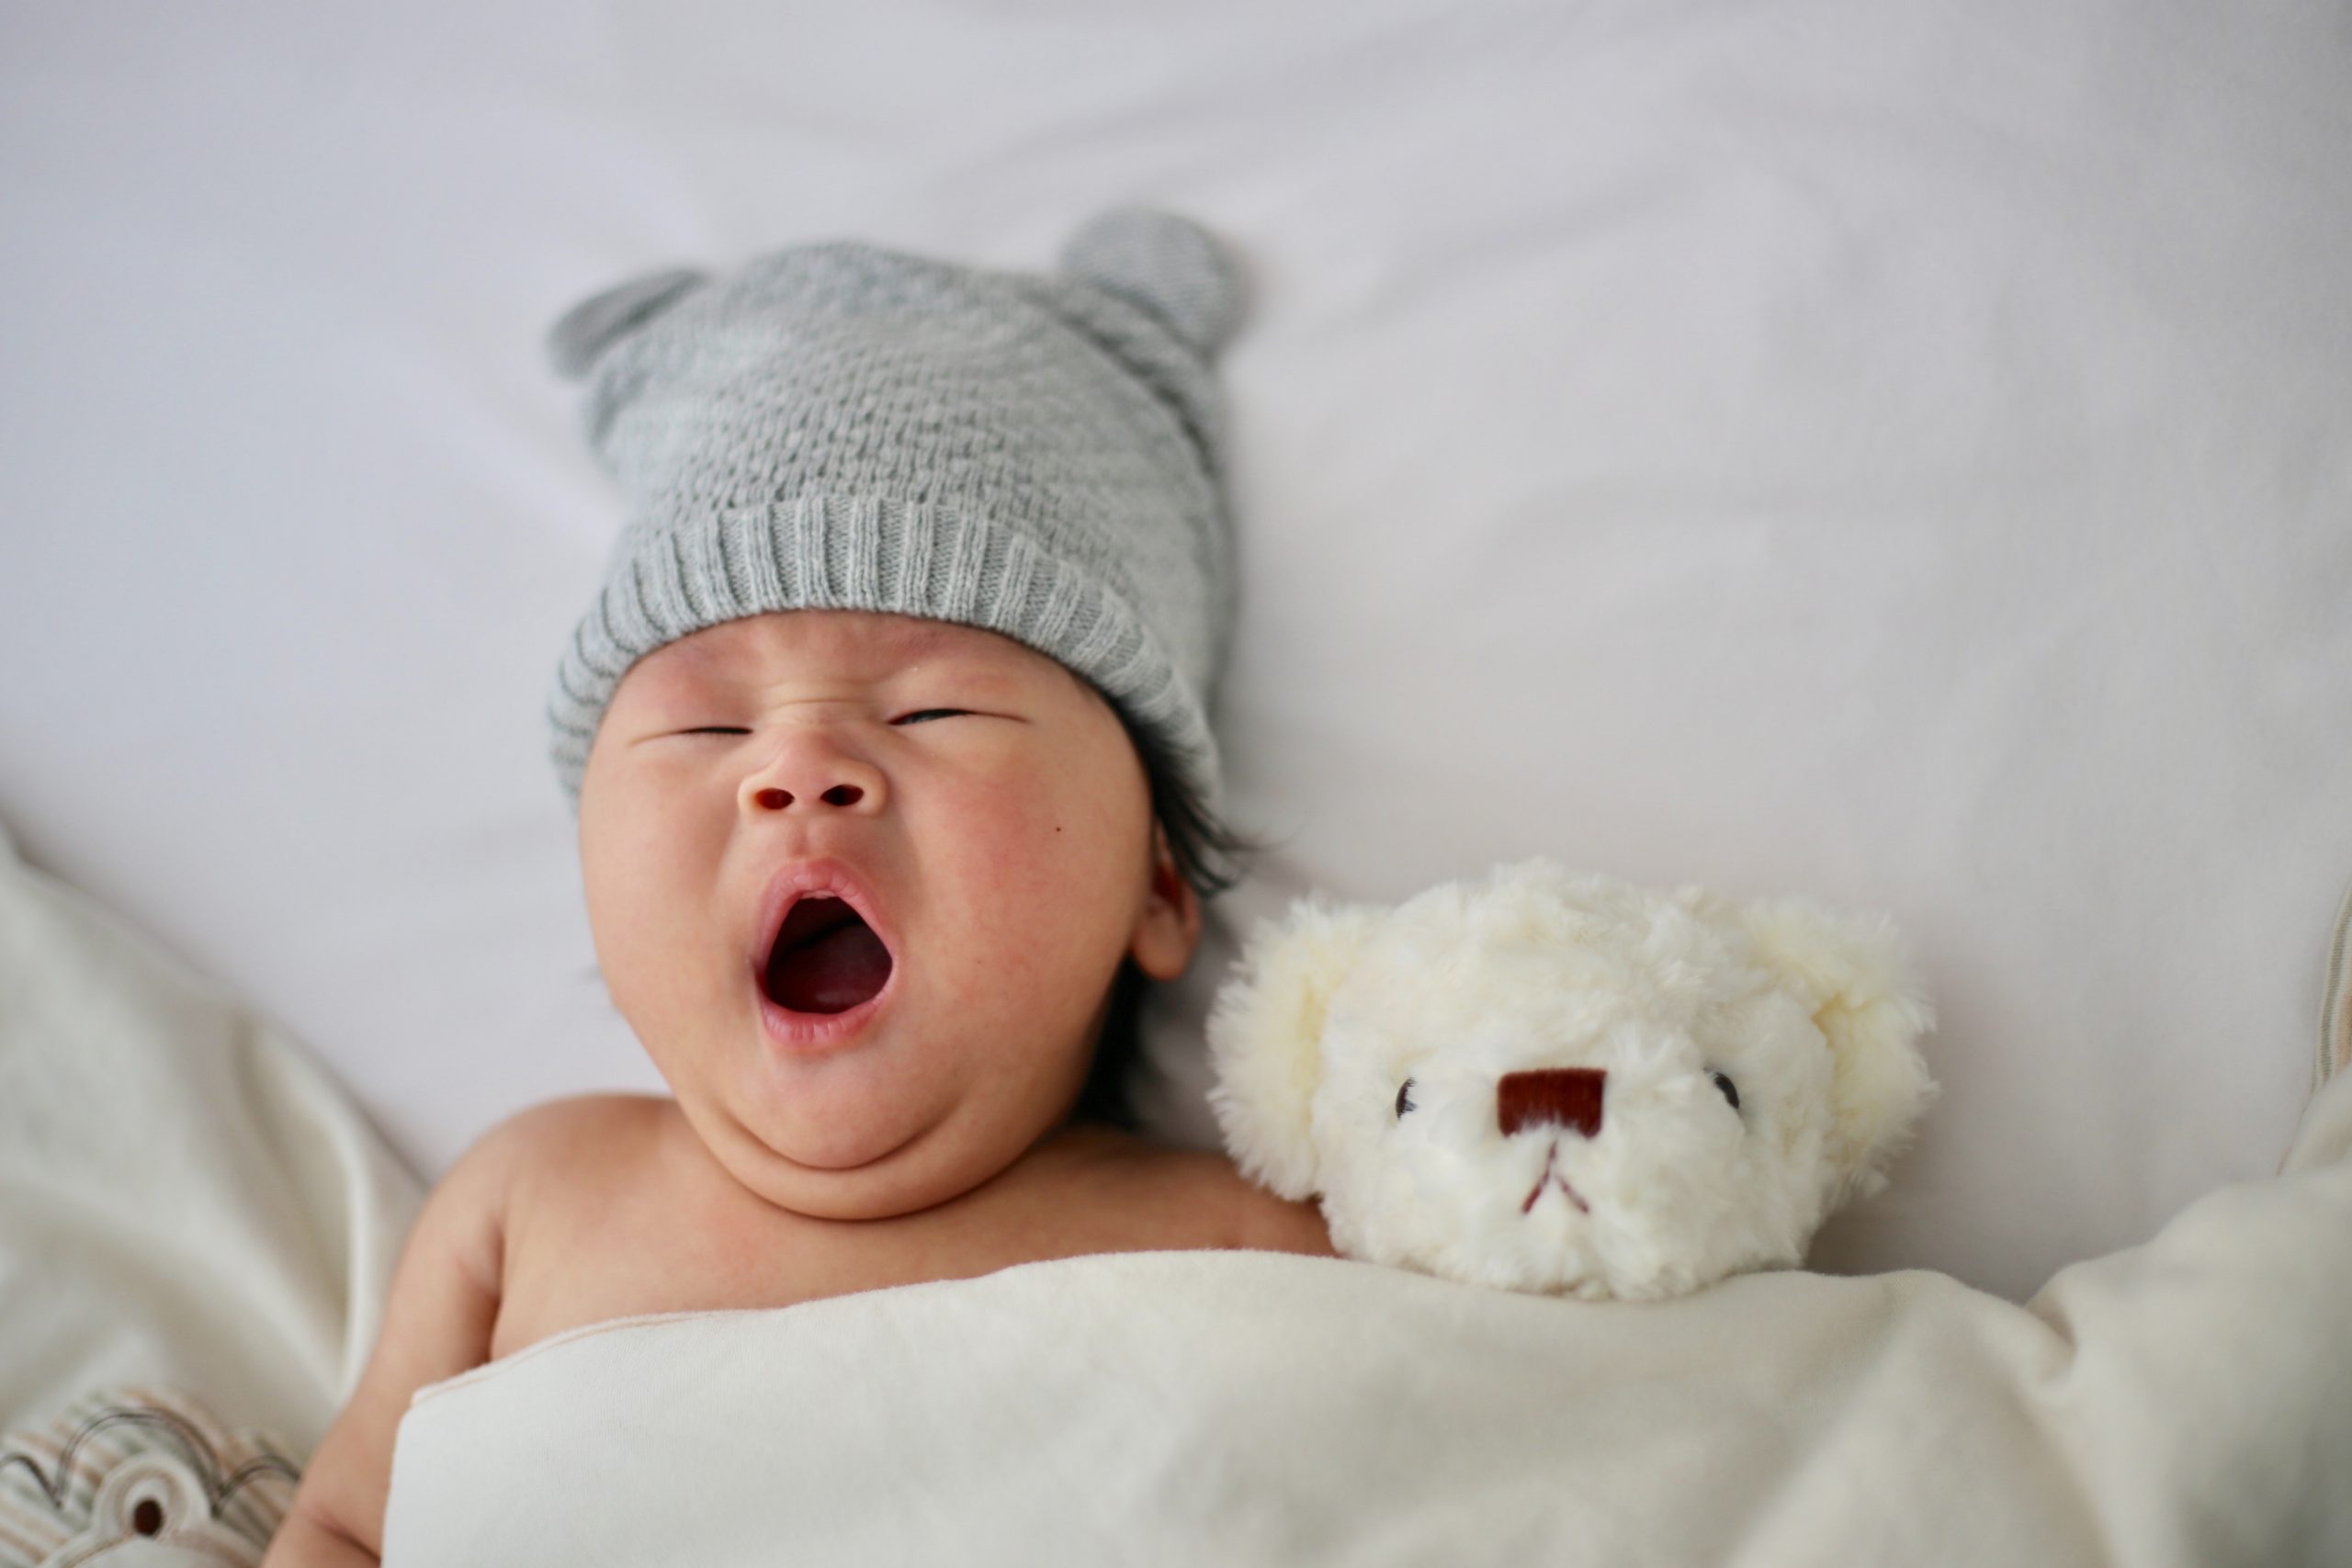 Comment habiller votre bébé nouveau-né pendant la période hivernale ?